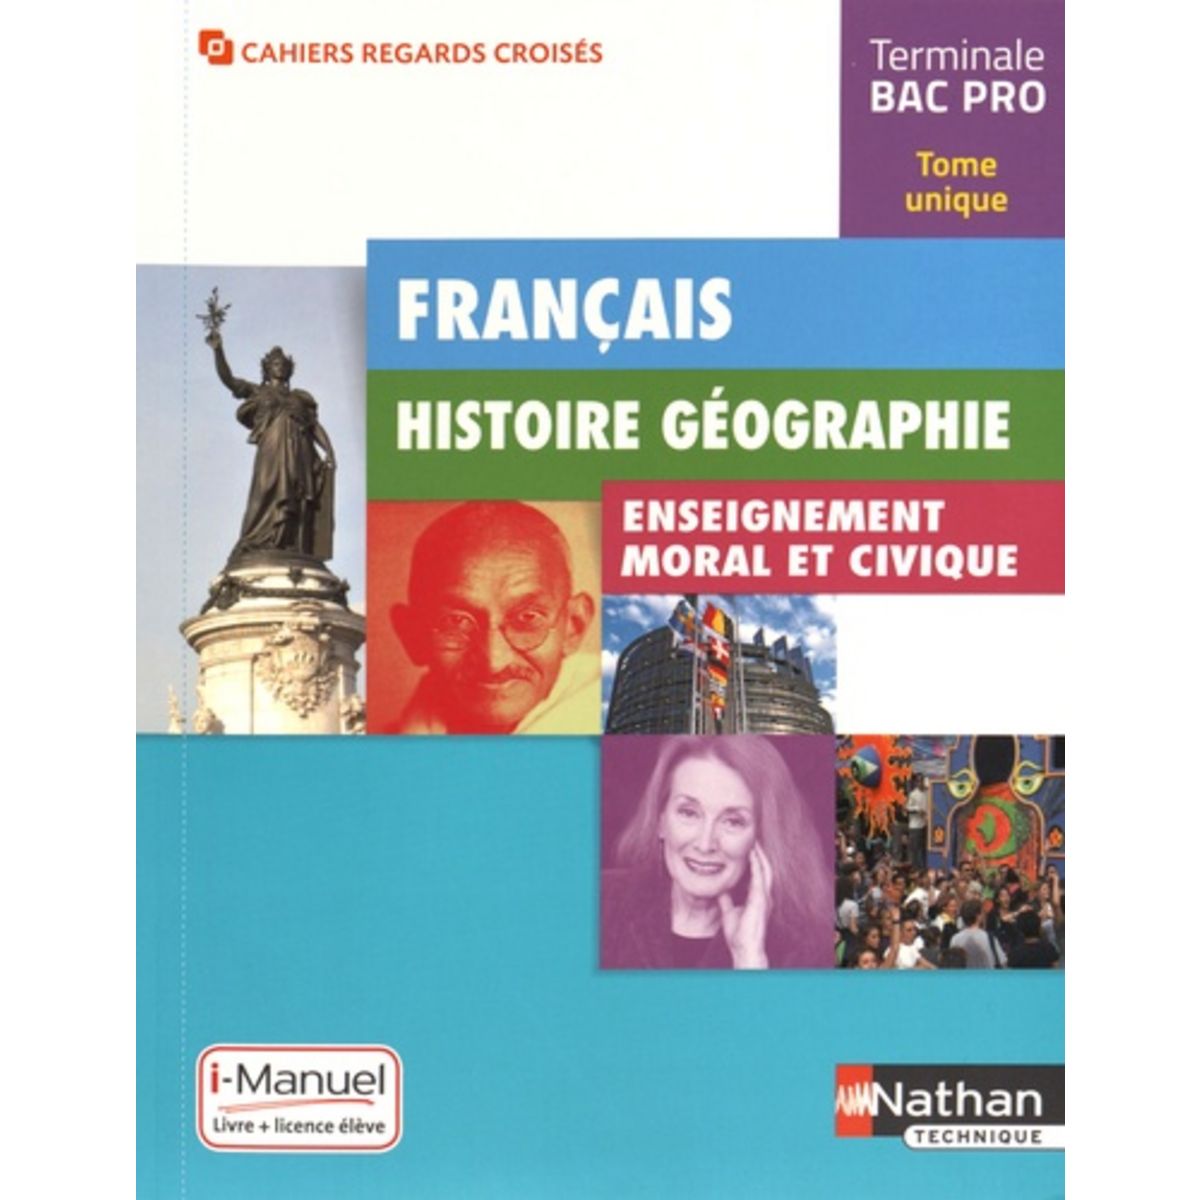 Francais Histoire Geographie Enseignement Moral Et Civique Terminale Bac Pro I Manuel 0624